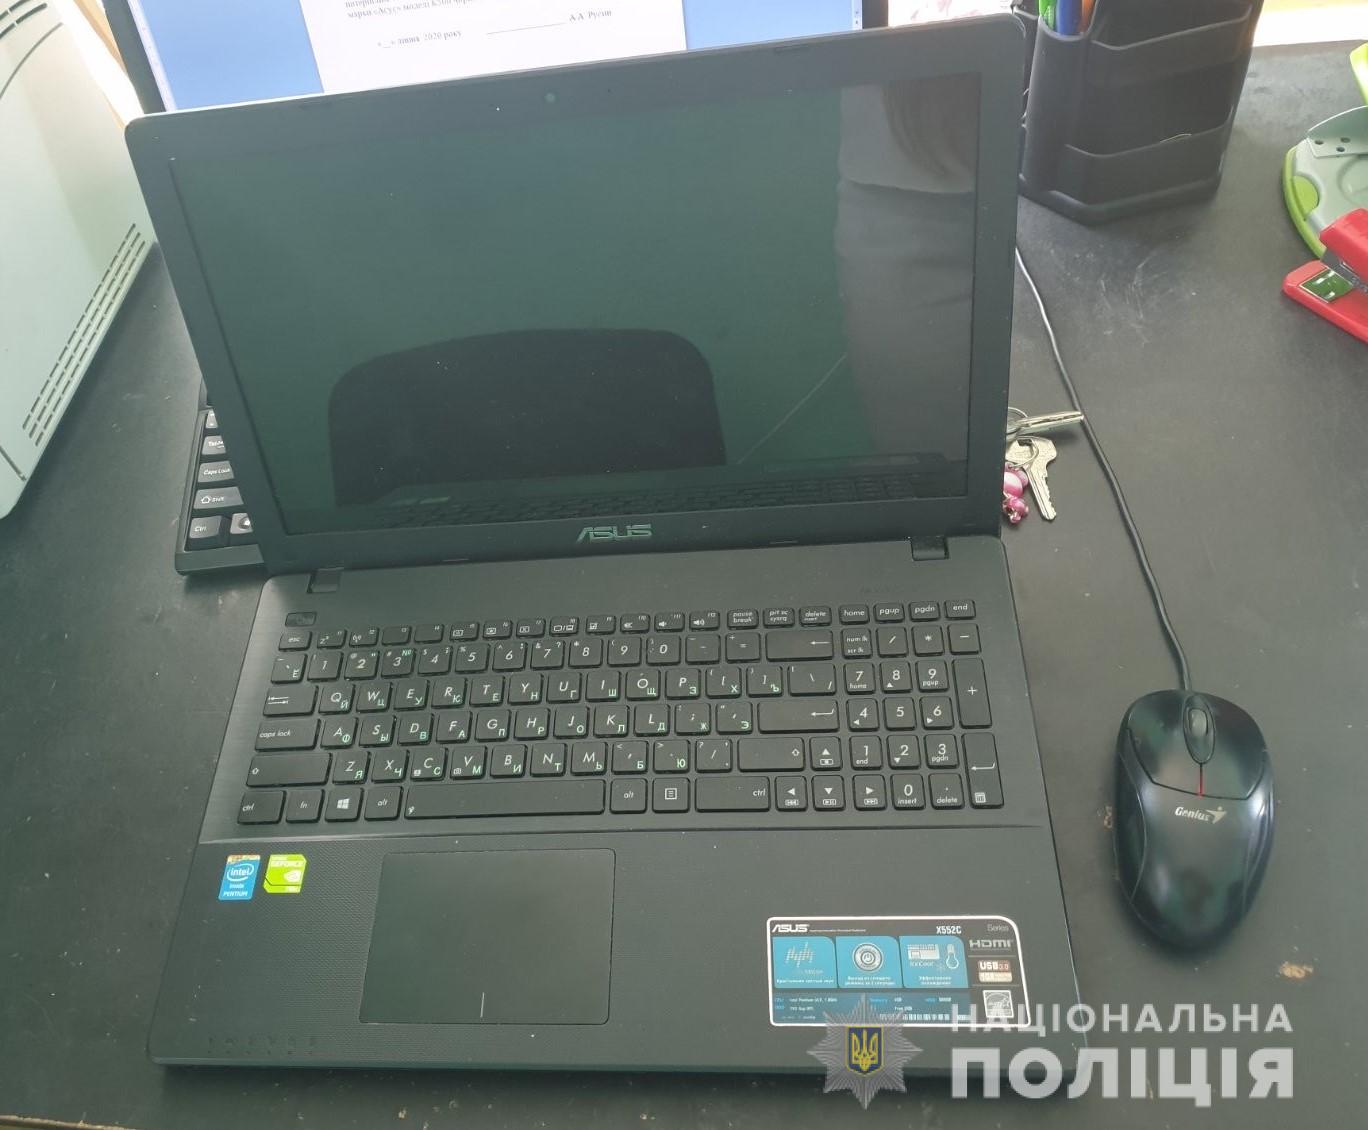 У Мукачеві 17-річний юнак викрав із магазину канцелярії ноутбук (ФОТО)